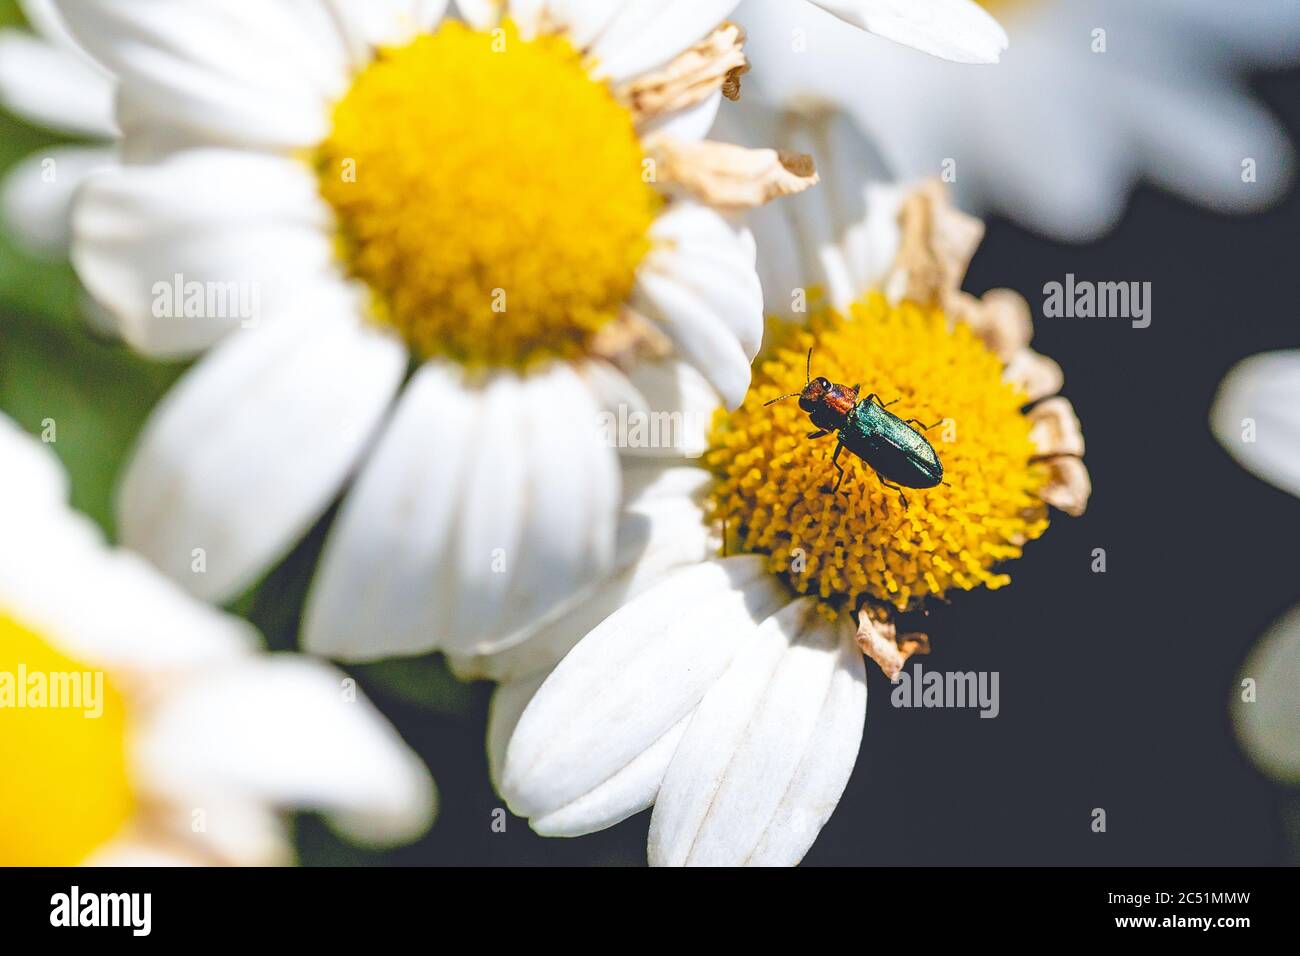 Selektive Fokusaufnahme eines Insekts auf einer Kamillenblüte Mit schwarzem Hintergrund Stockfoto